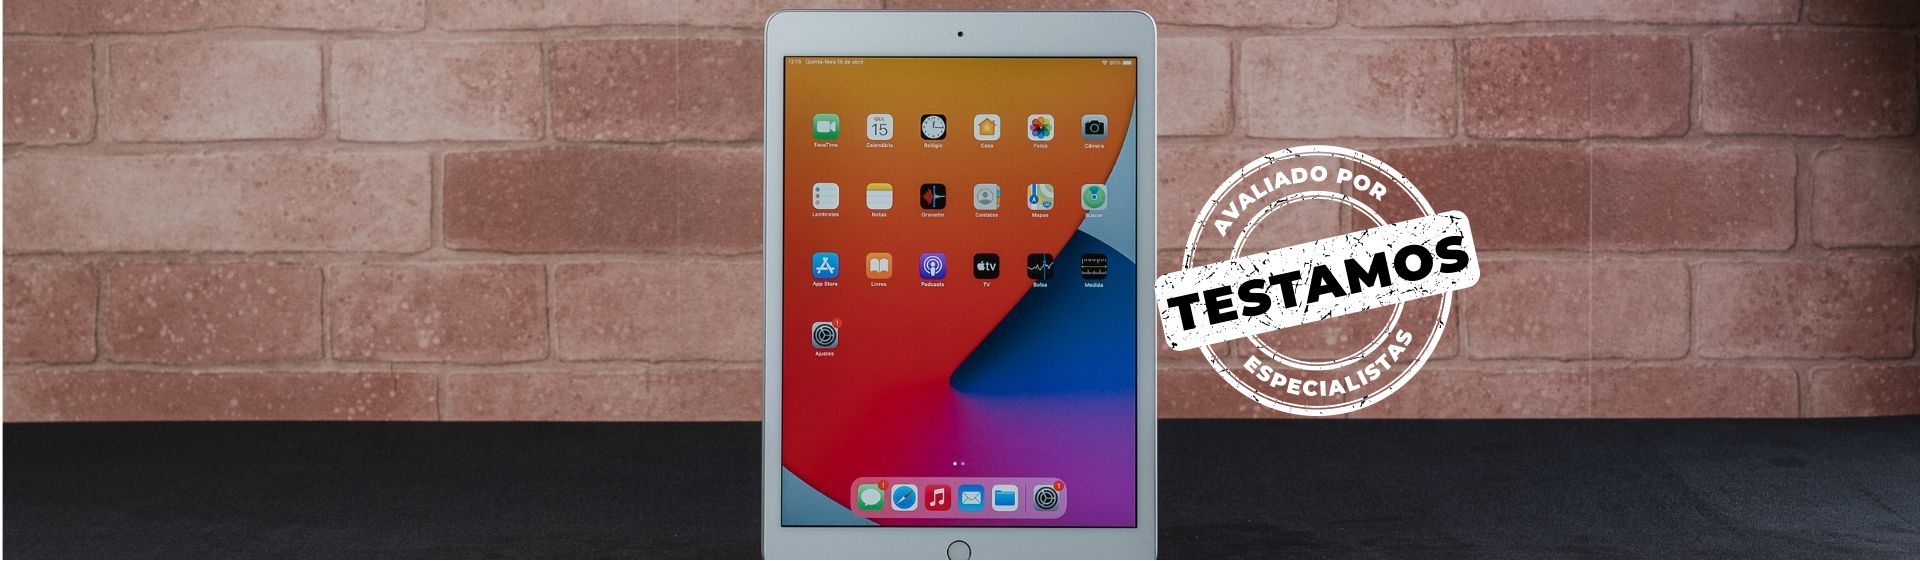 iPad 8ª geração: tablet "barato" da Apple tem bom desempenho